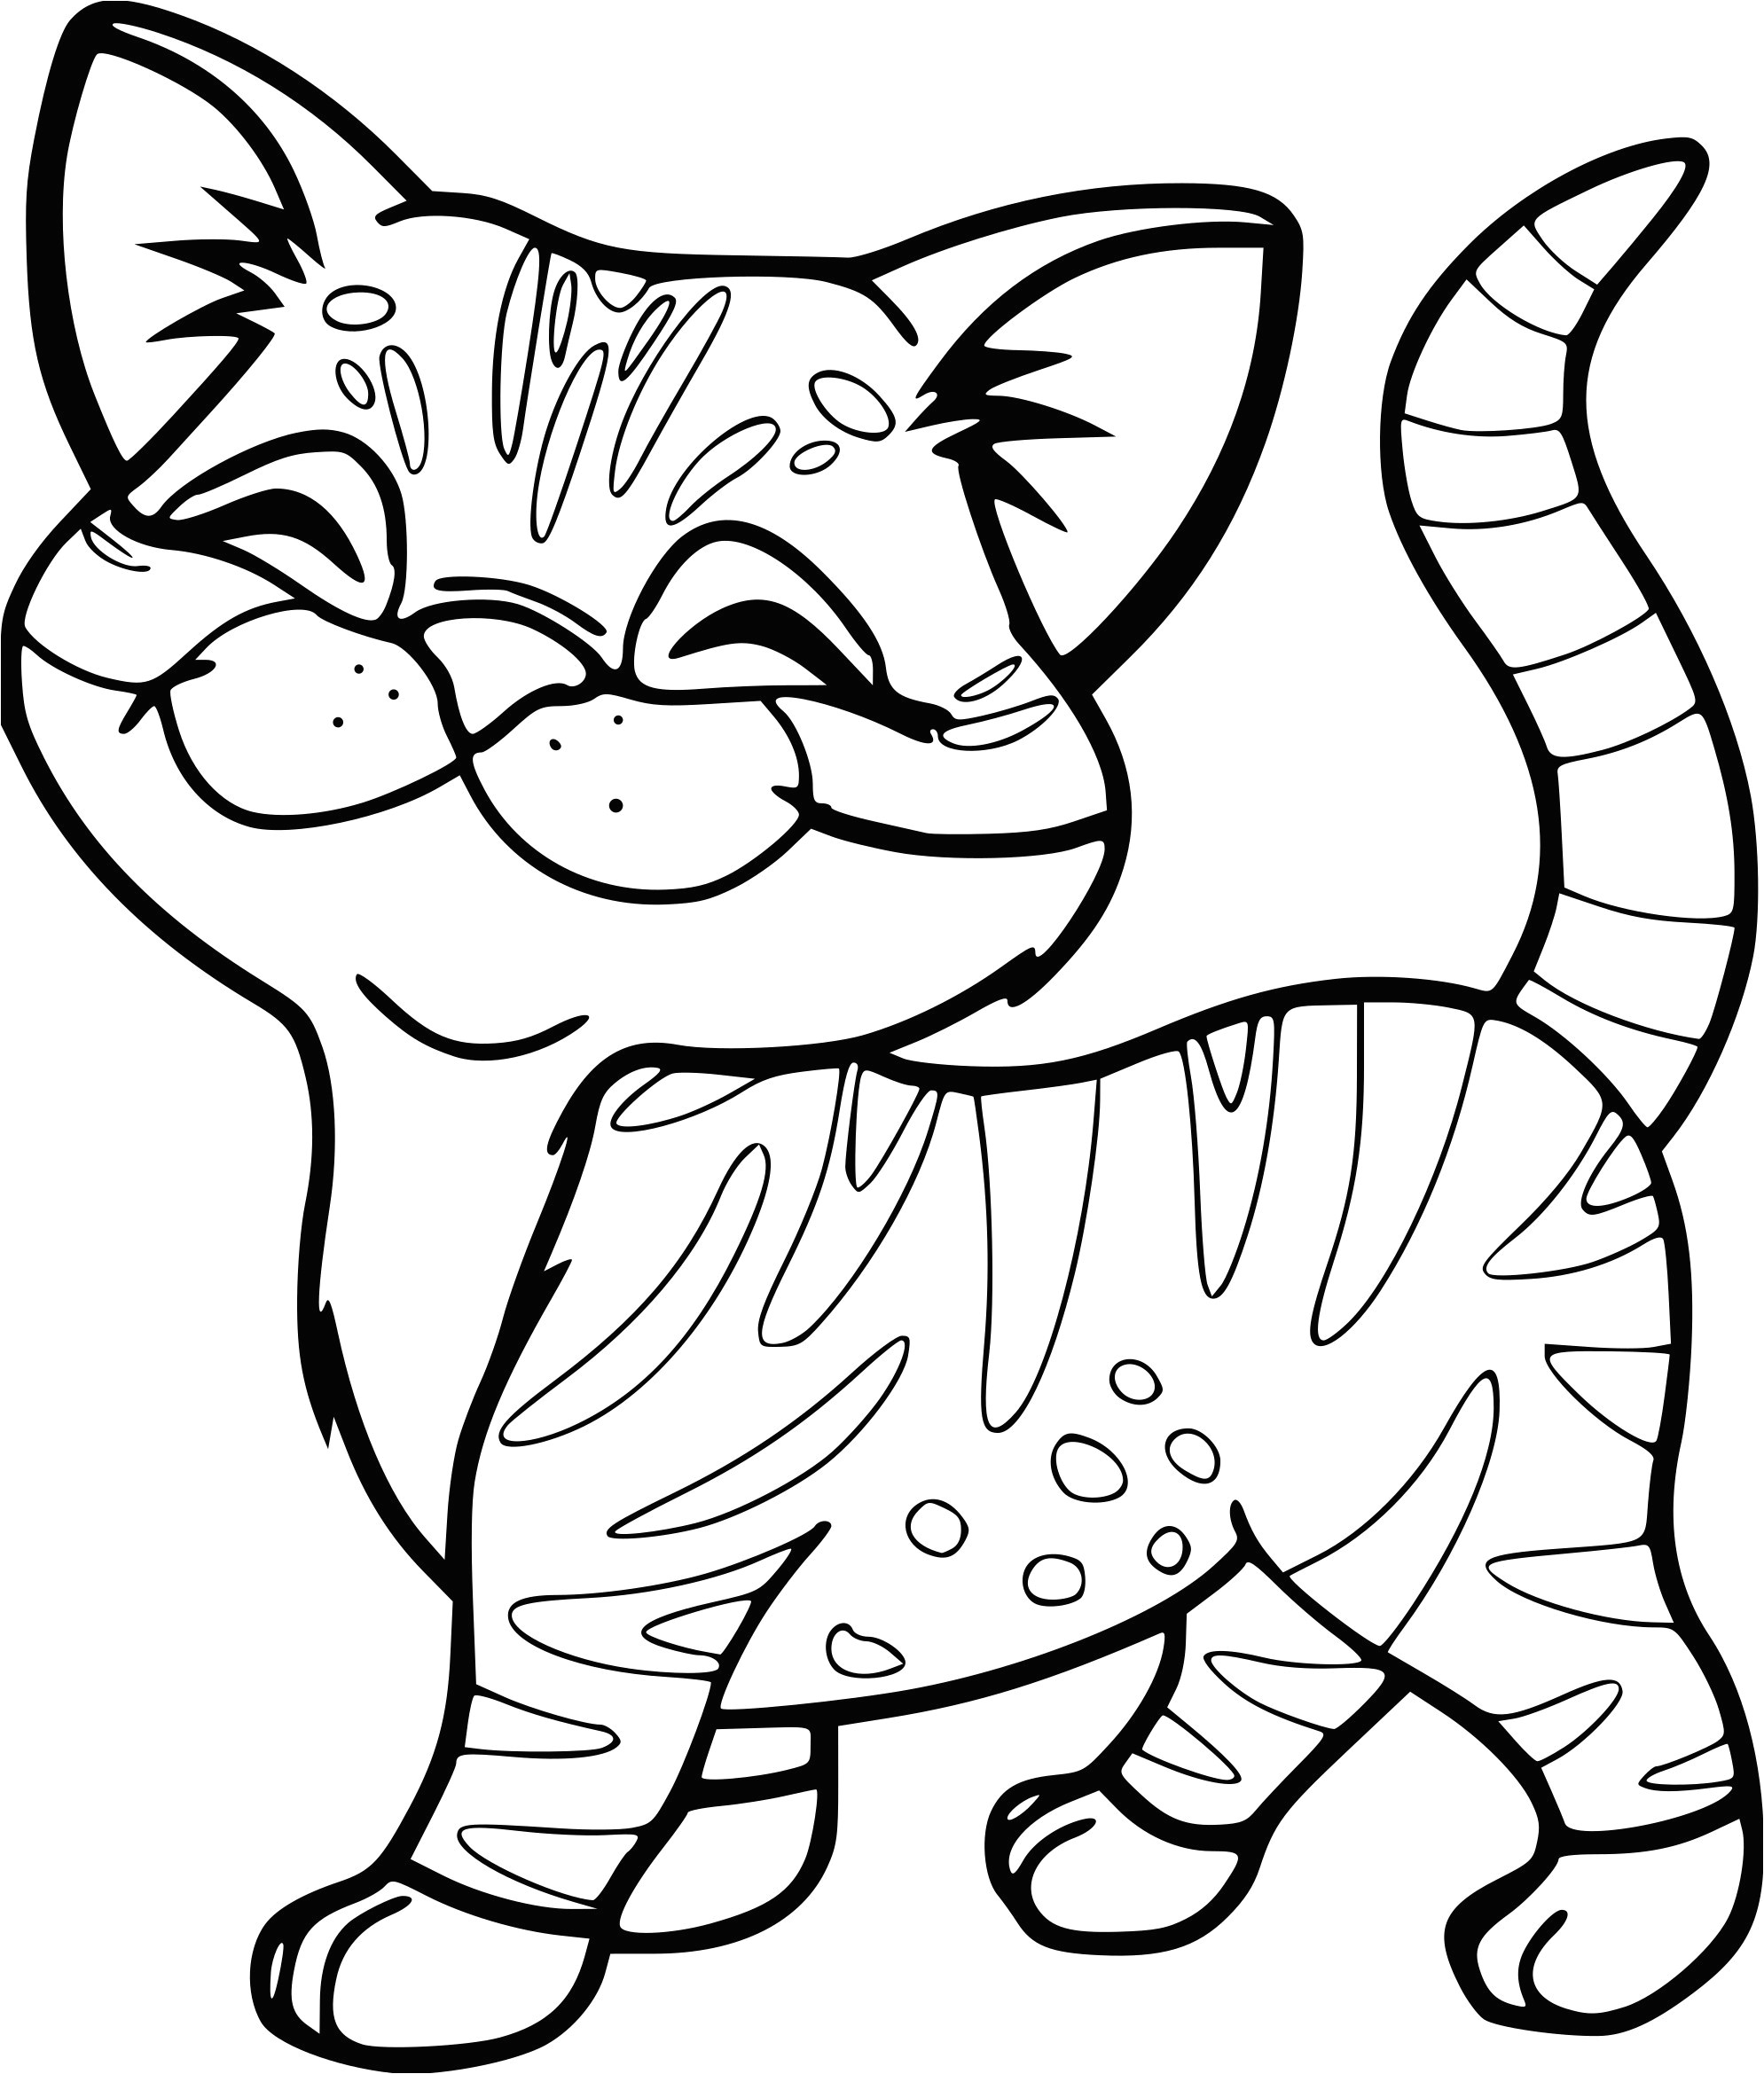 coloriage de chaton trop mignon a imprimer gratuitement dessin de chat trop mignon et facile fantastique construction image